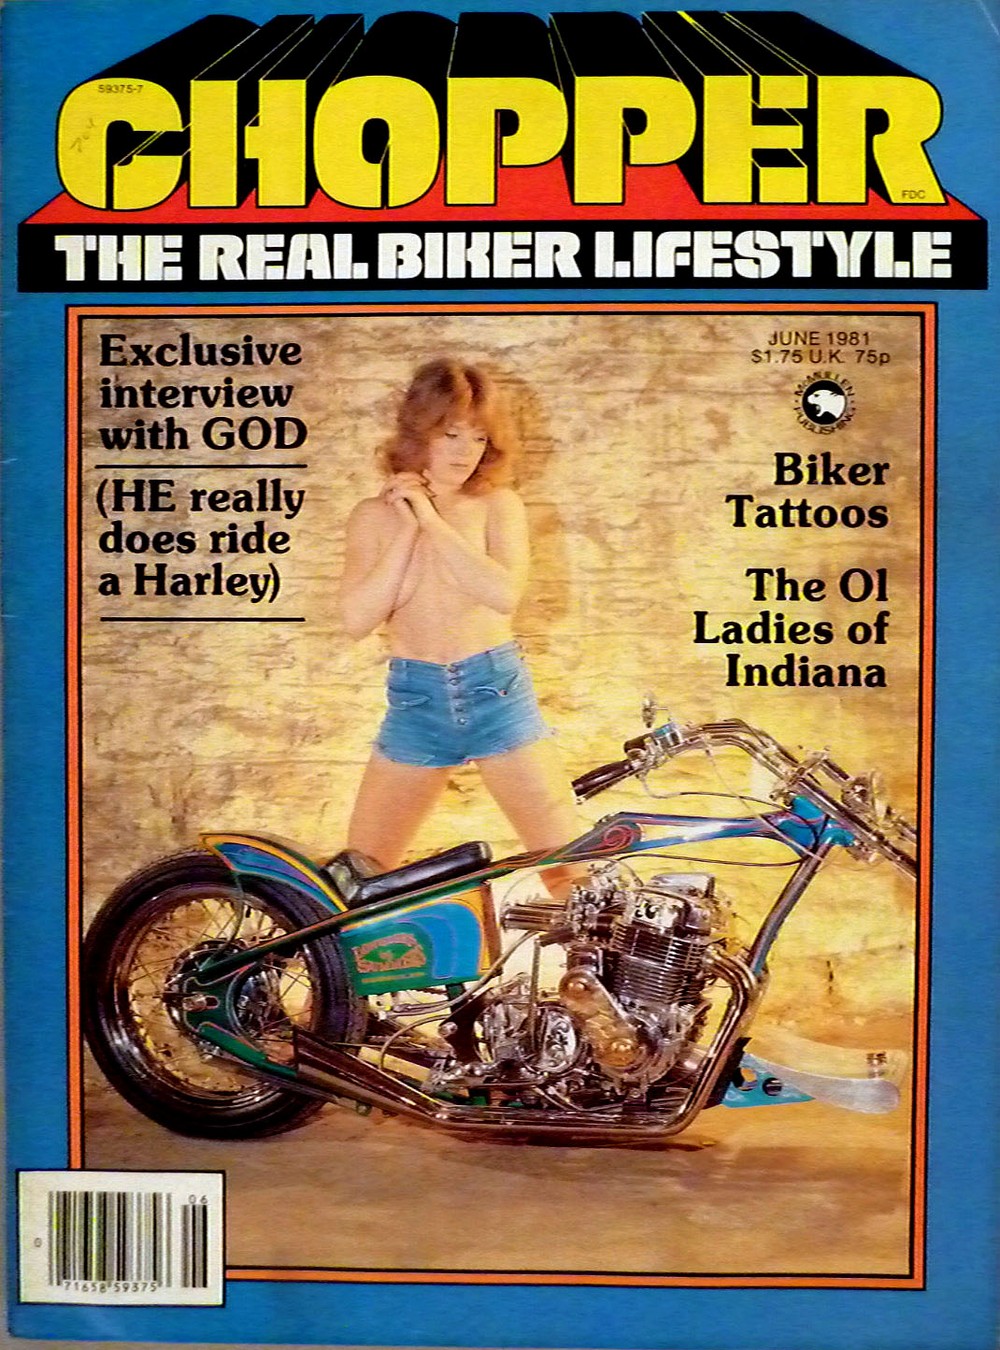 Горячие девушки на обложках байкерских журналов 1980-х годов